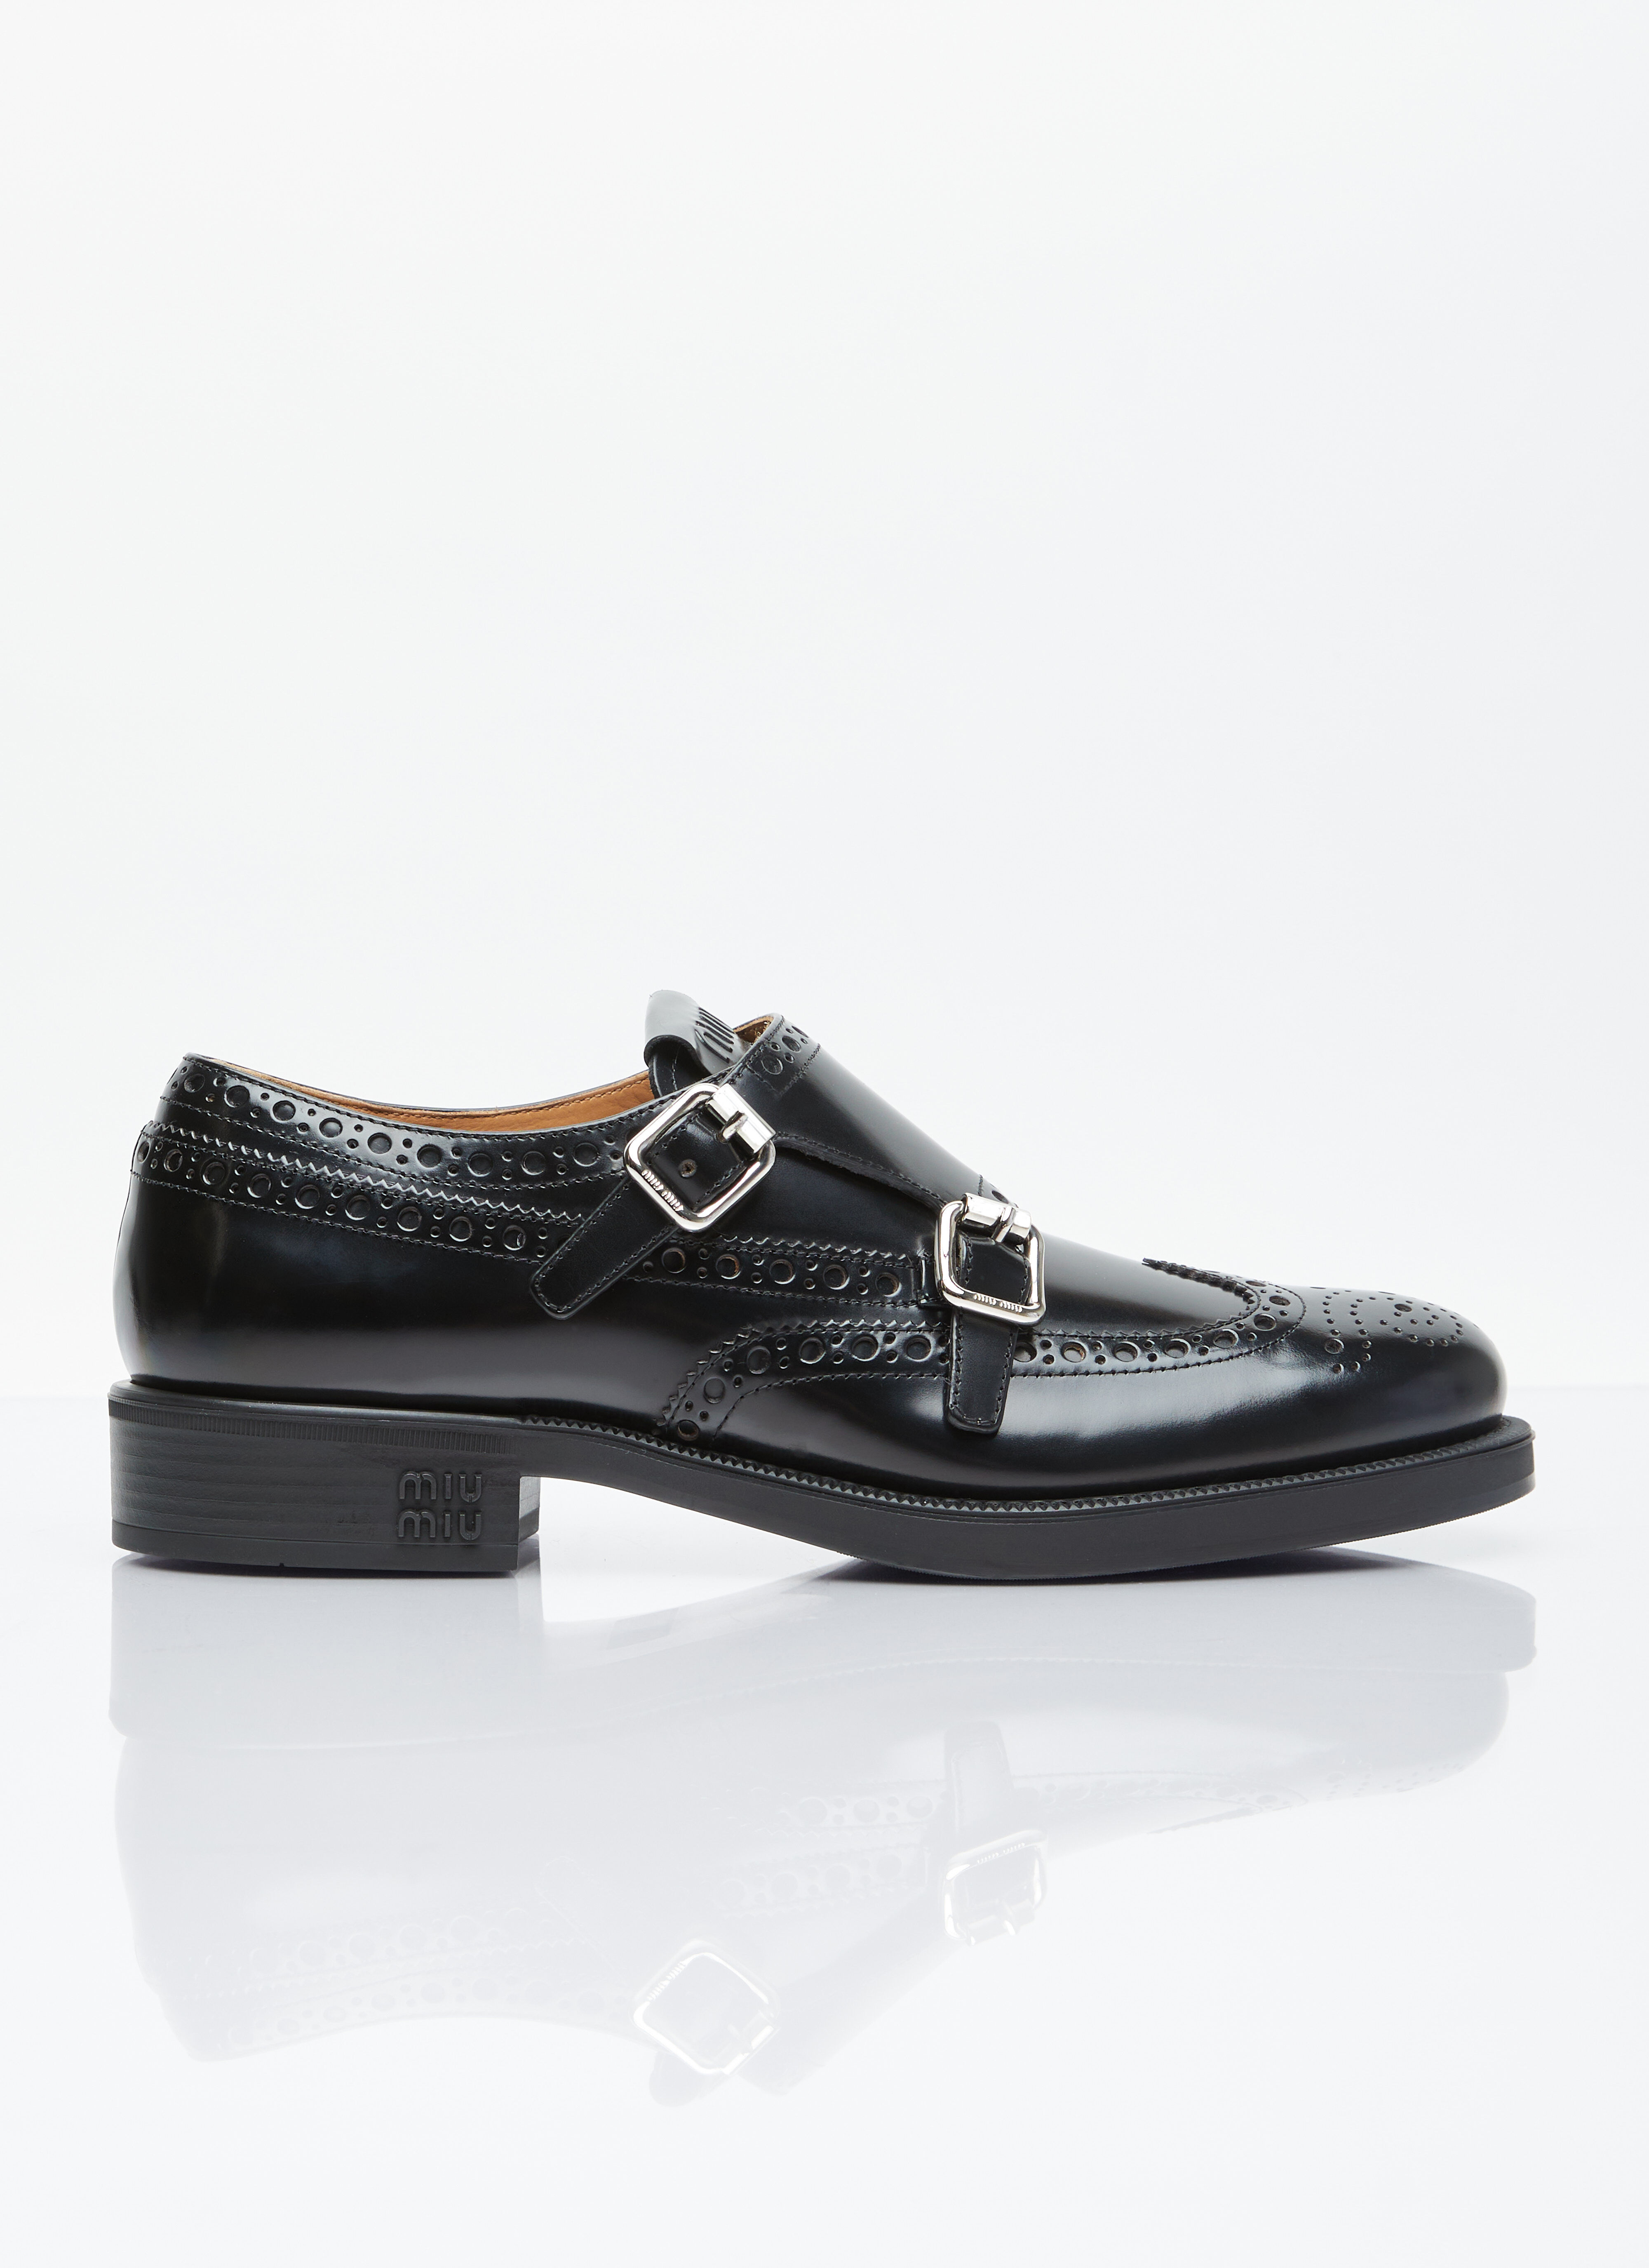 Saint Laurent x Church's Brushed Leather Double Monk Brogue Shoes Black sla0254045